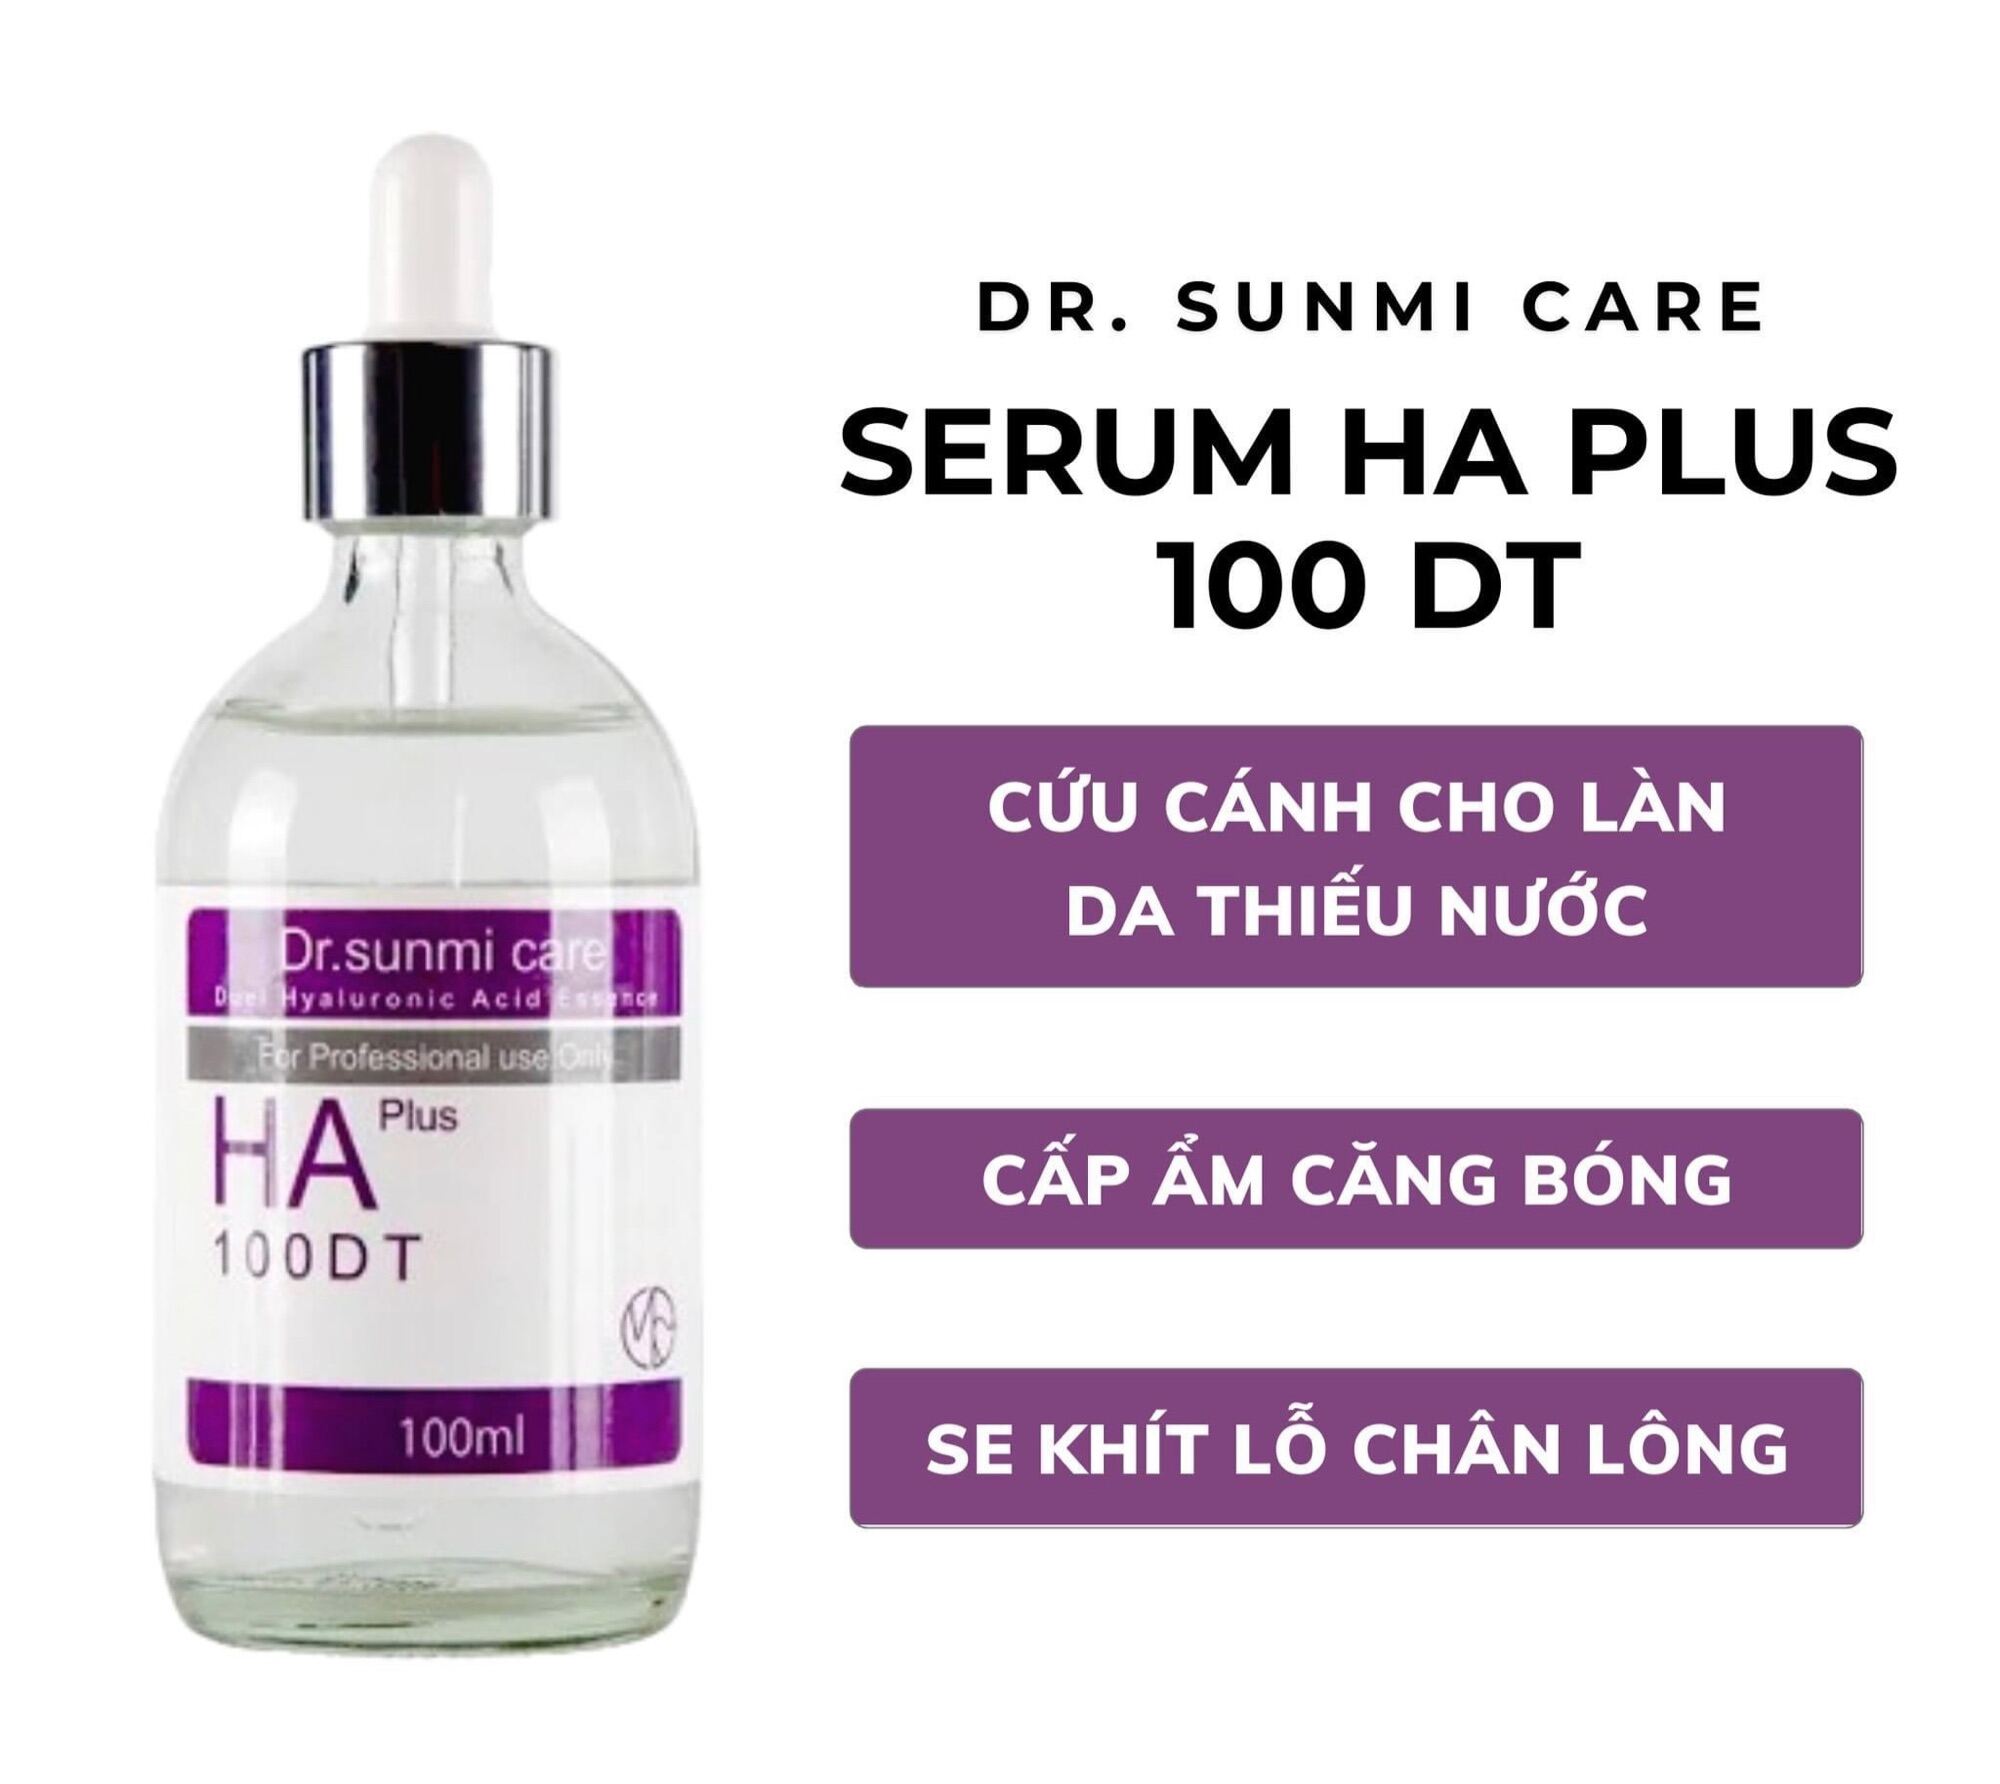 Serum Dr.Sunmi Giới thiệu Serum HA Plus 100DT Dr.Sunmi Care